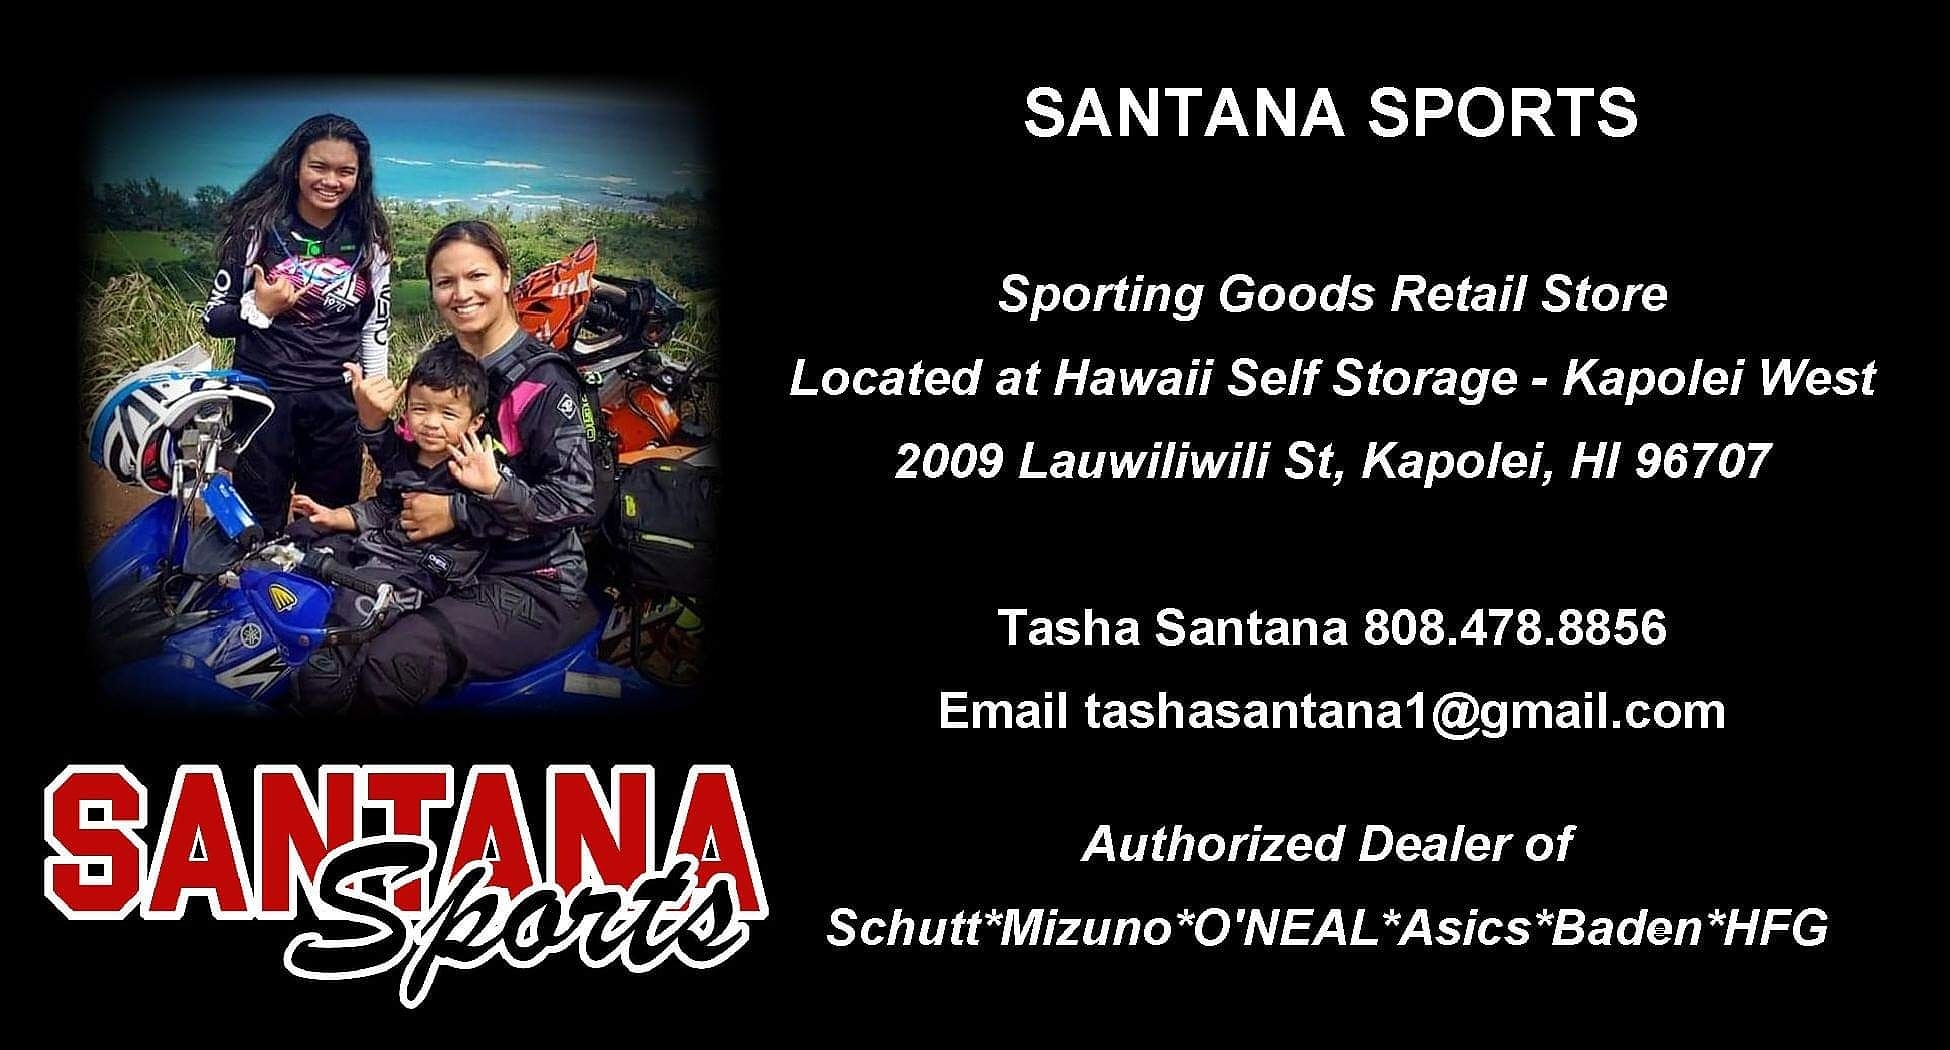 Santana Sports